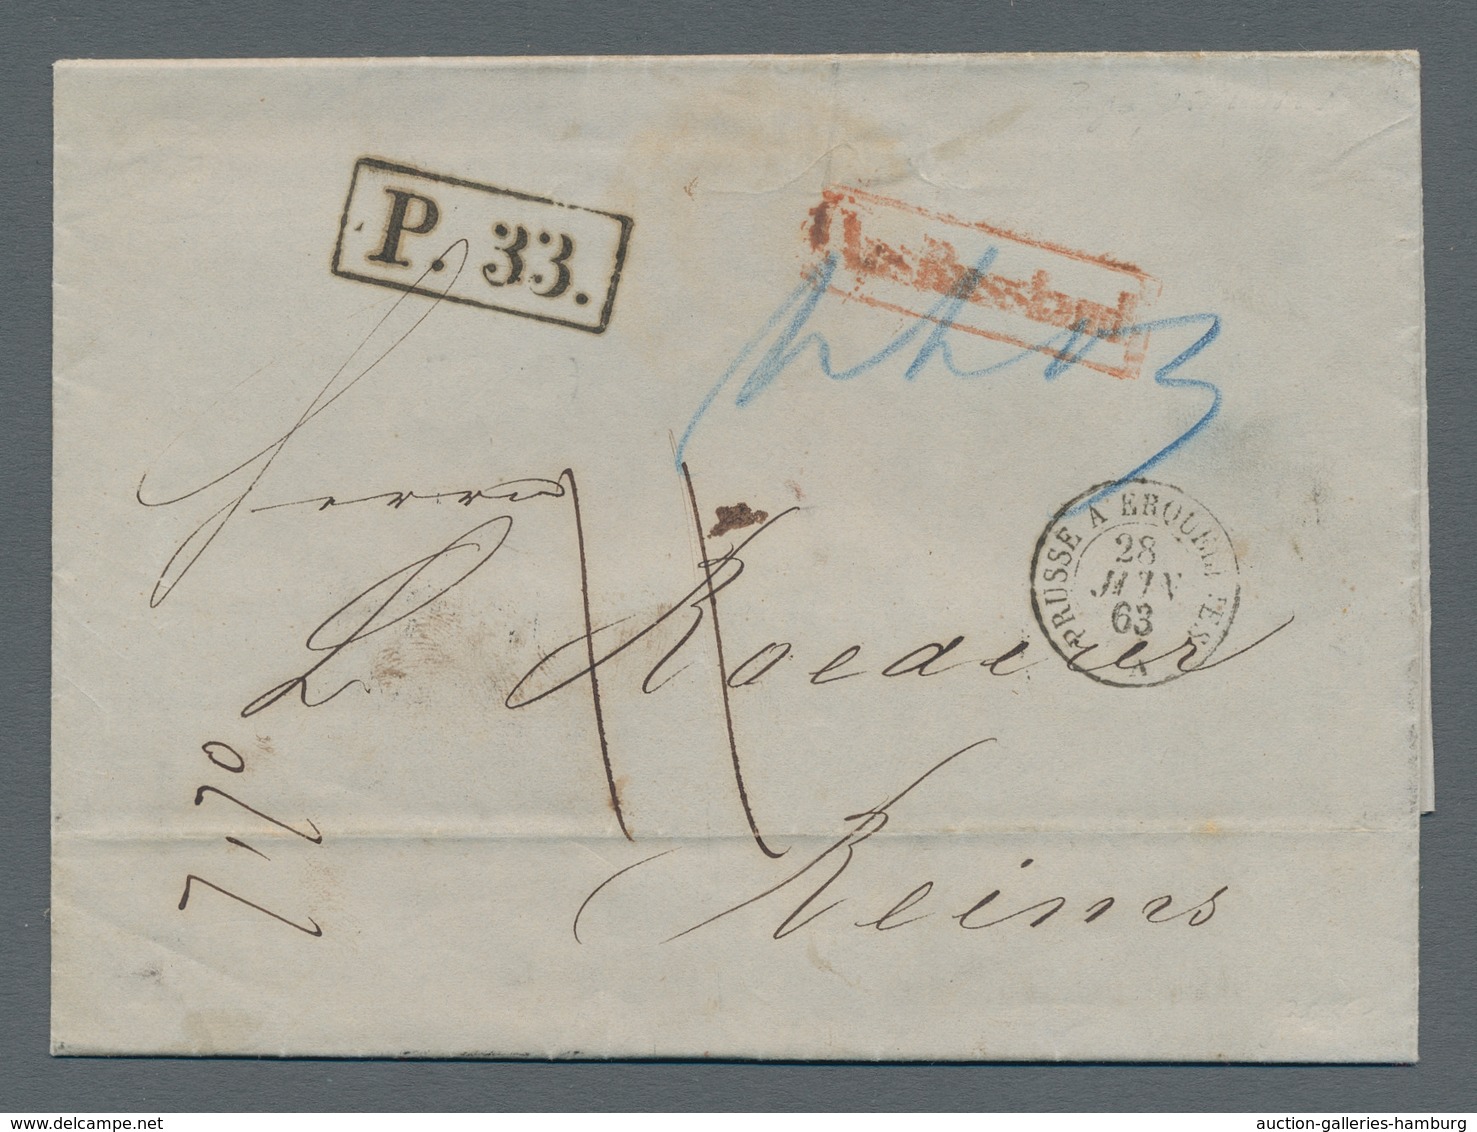 Preußen - Transitstempel: 1860-1867, reizvolle Partie von vier markenlosen Auslands-Briefen (mit Inh